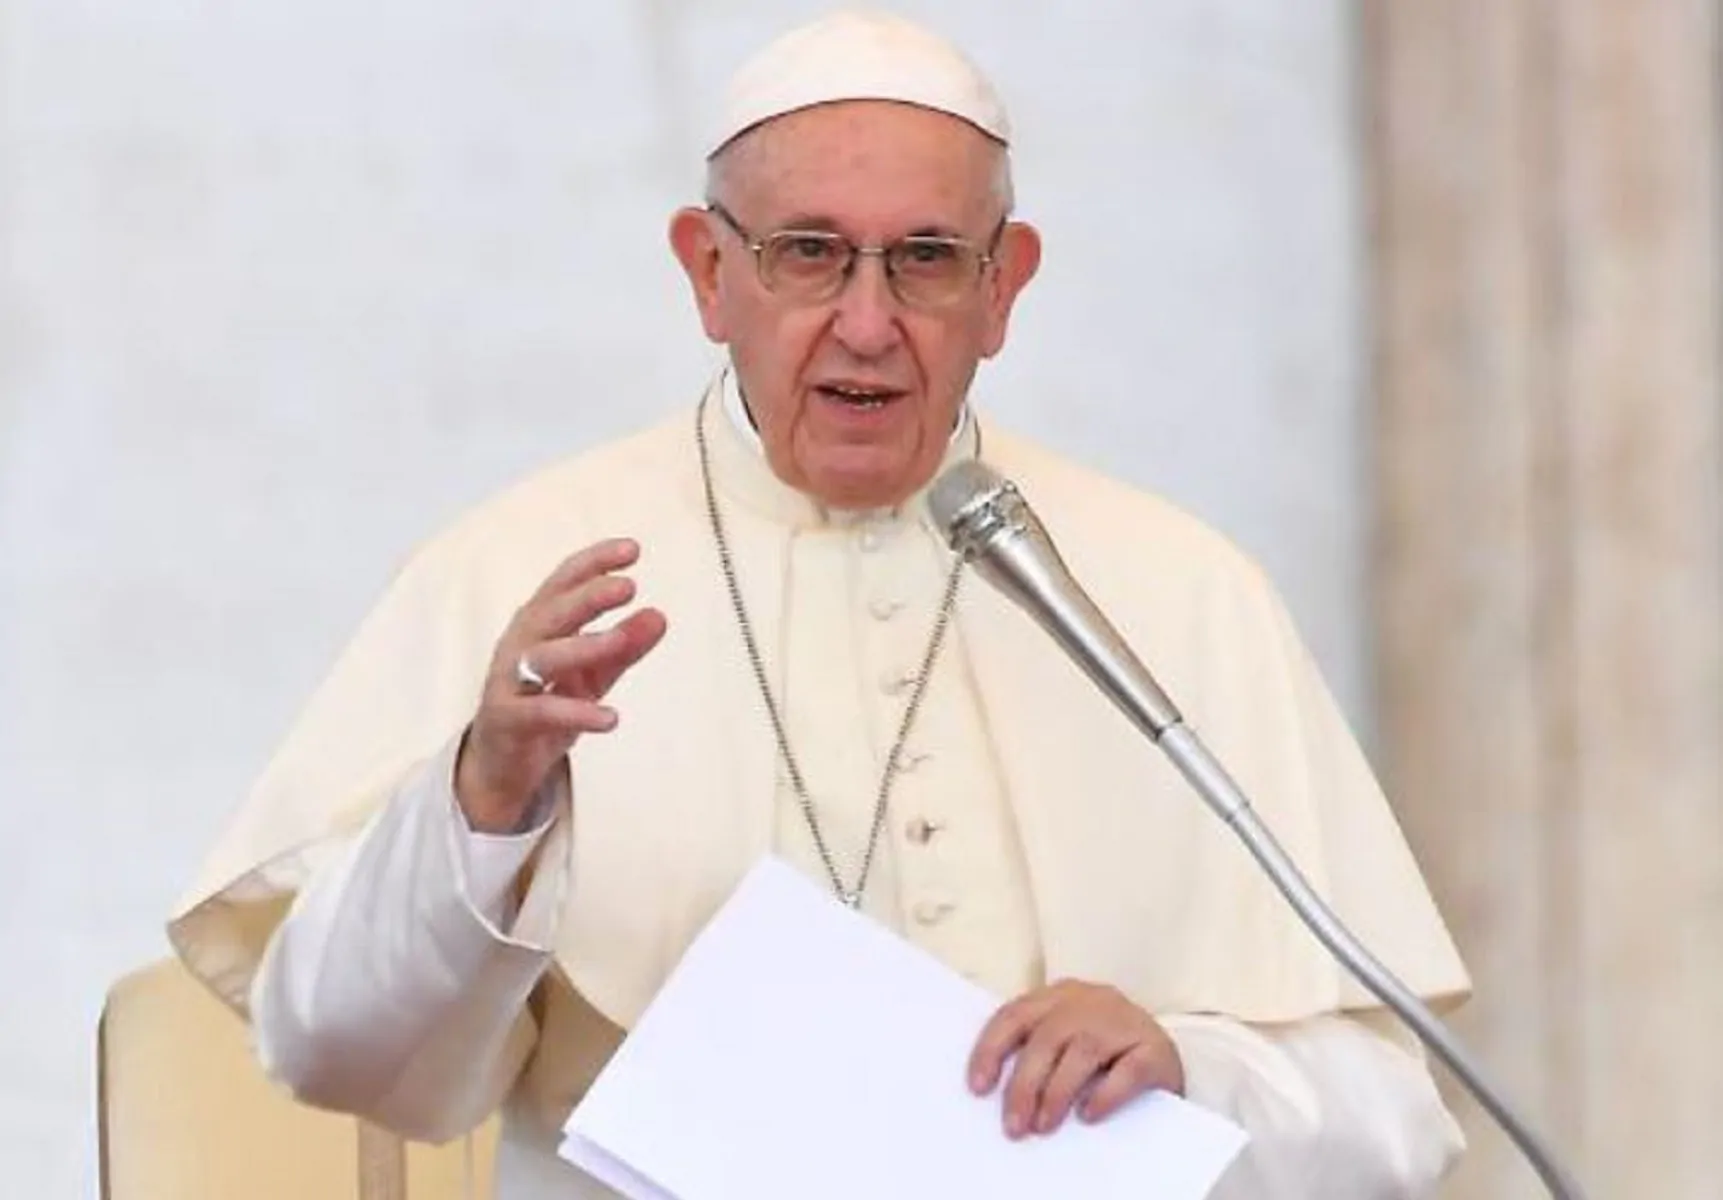 Veglia di Pasqua, papa Francesco: "Bisogna superare le barriere"